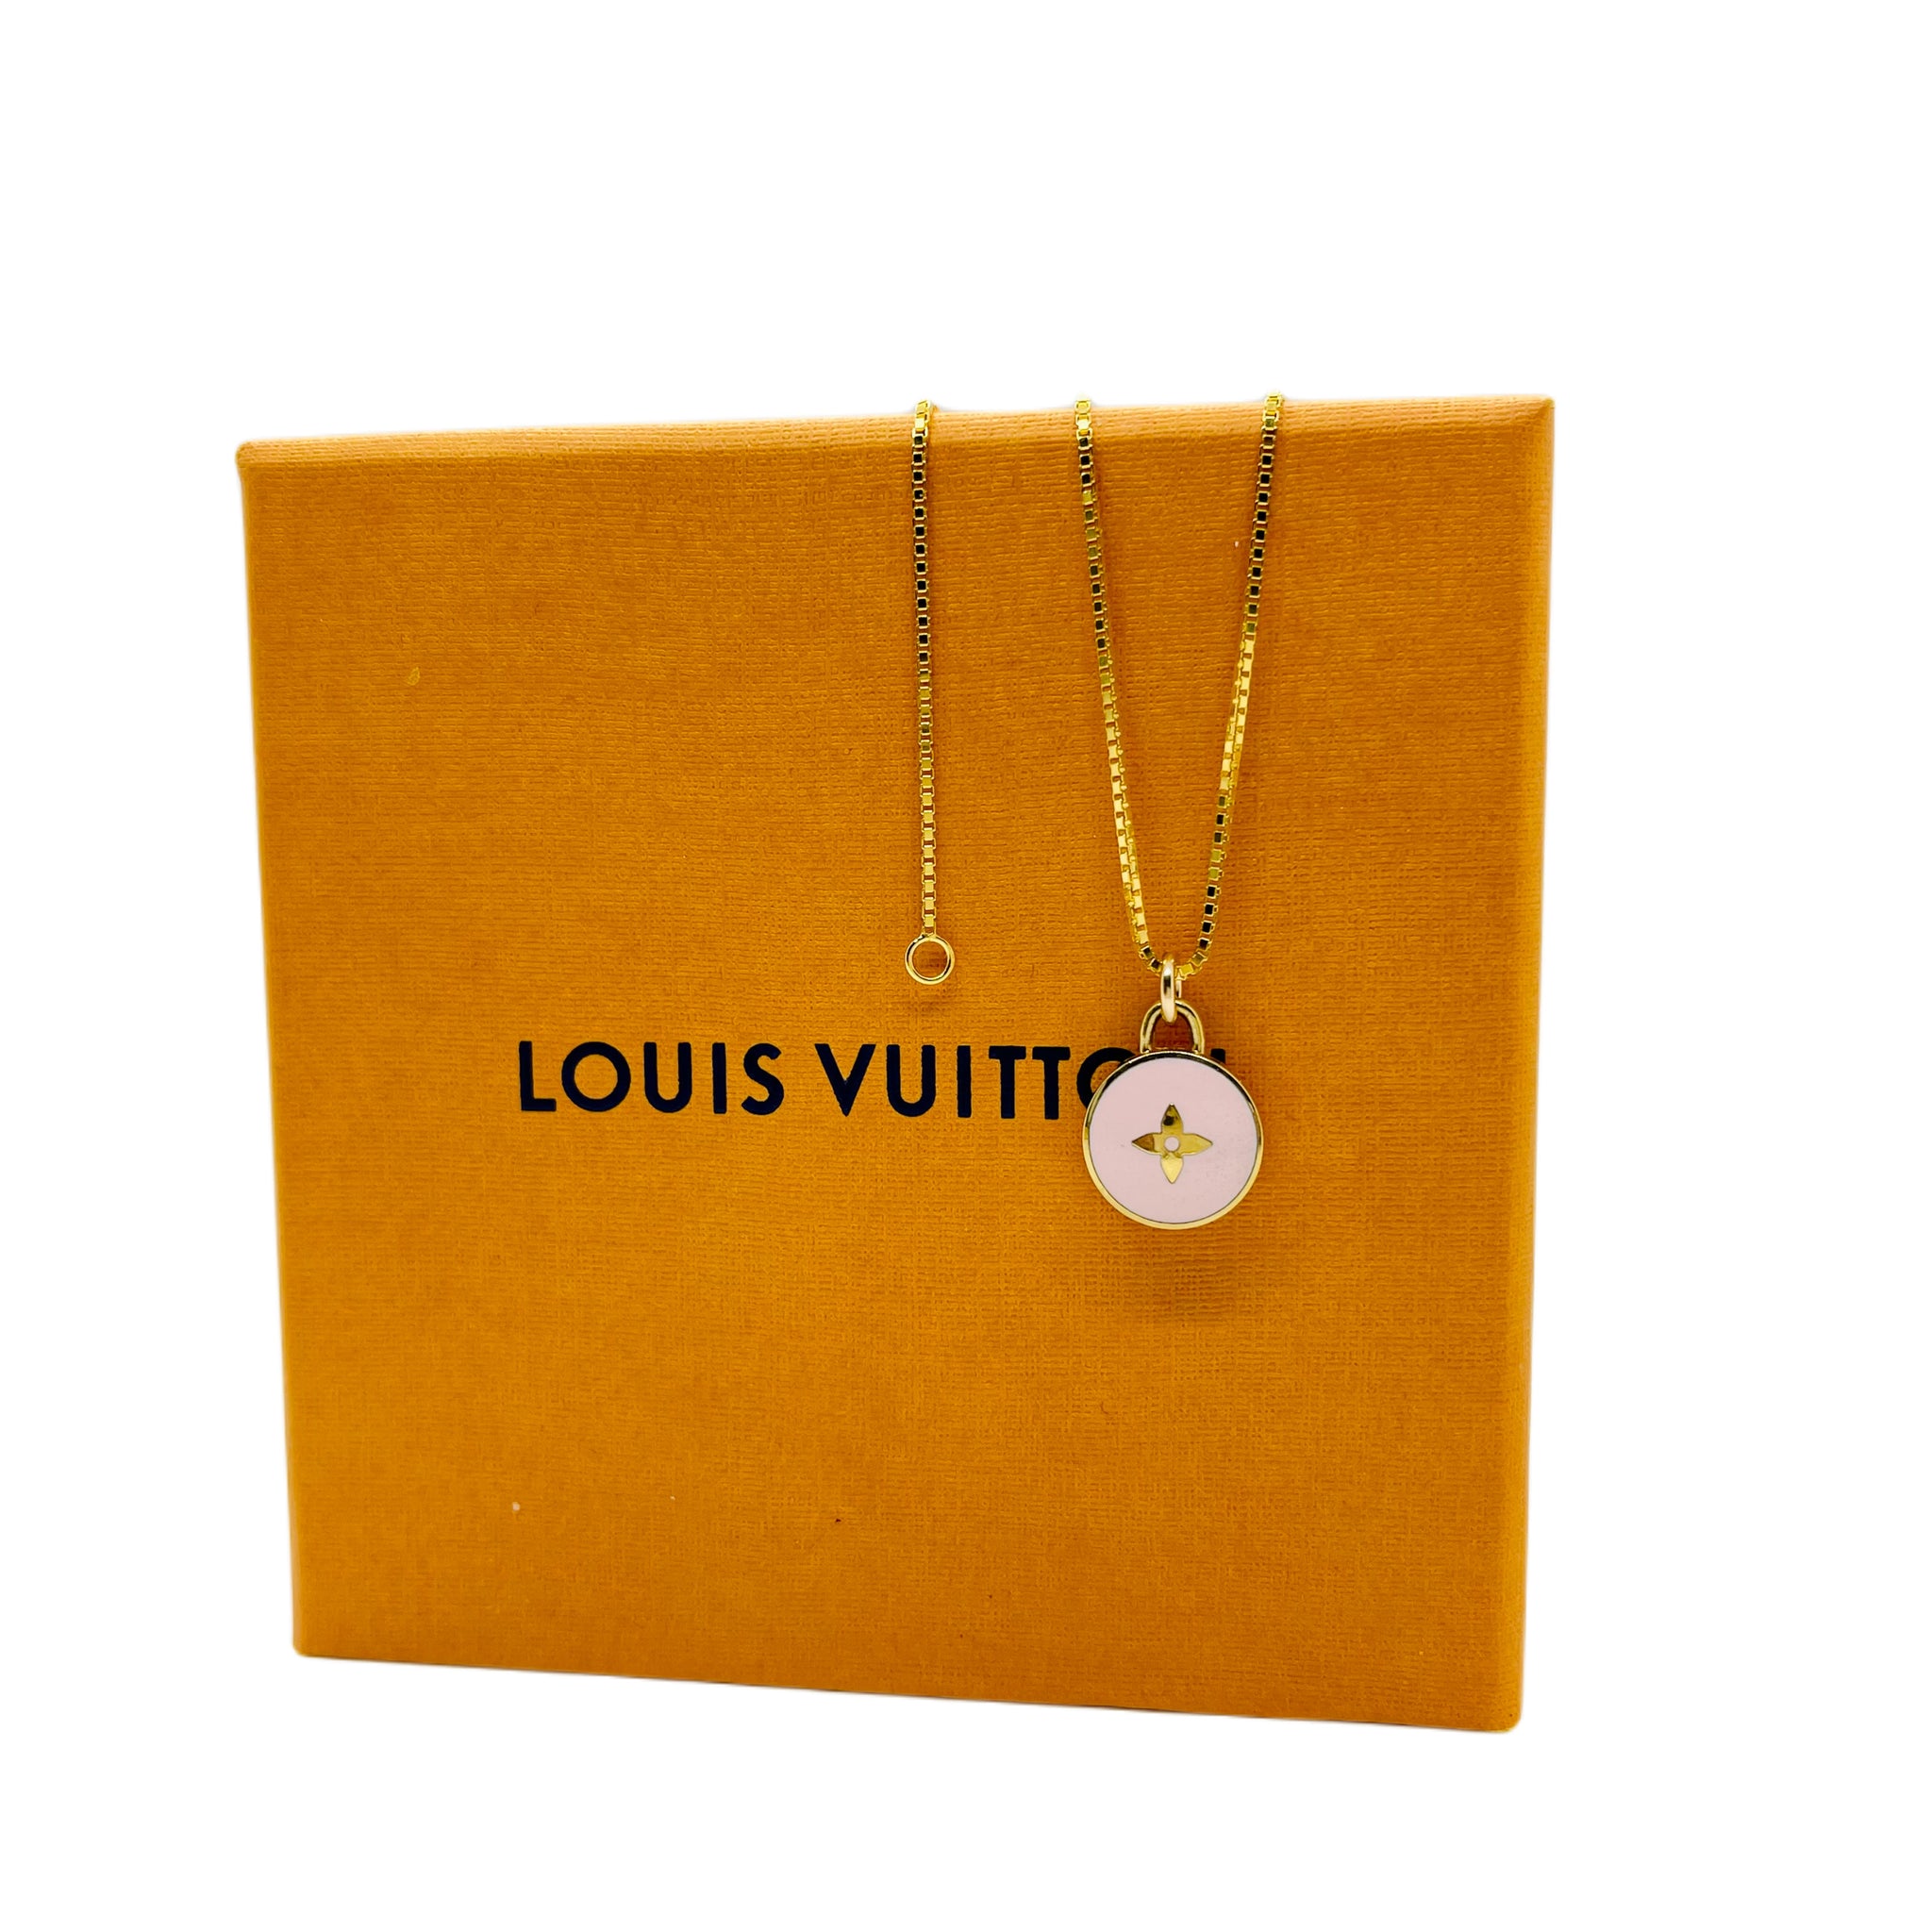 Repurposed Light Lavender & Gold Louis Vuitton Signature Flower